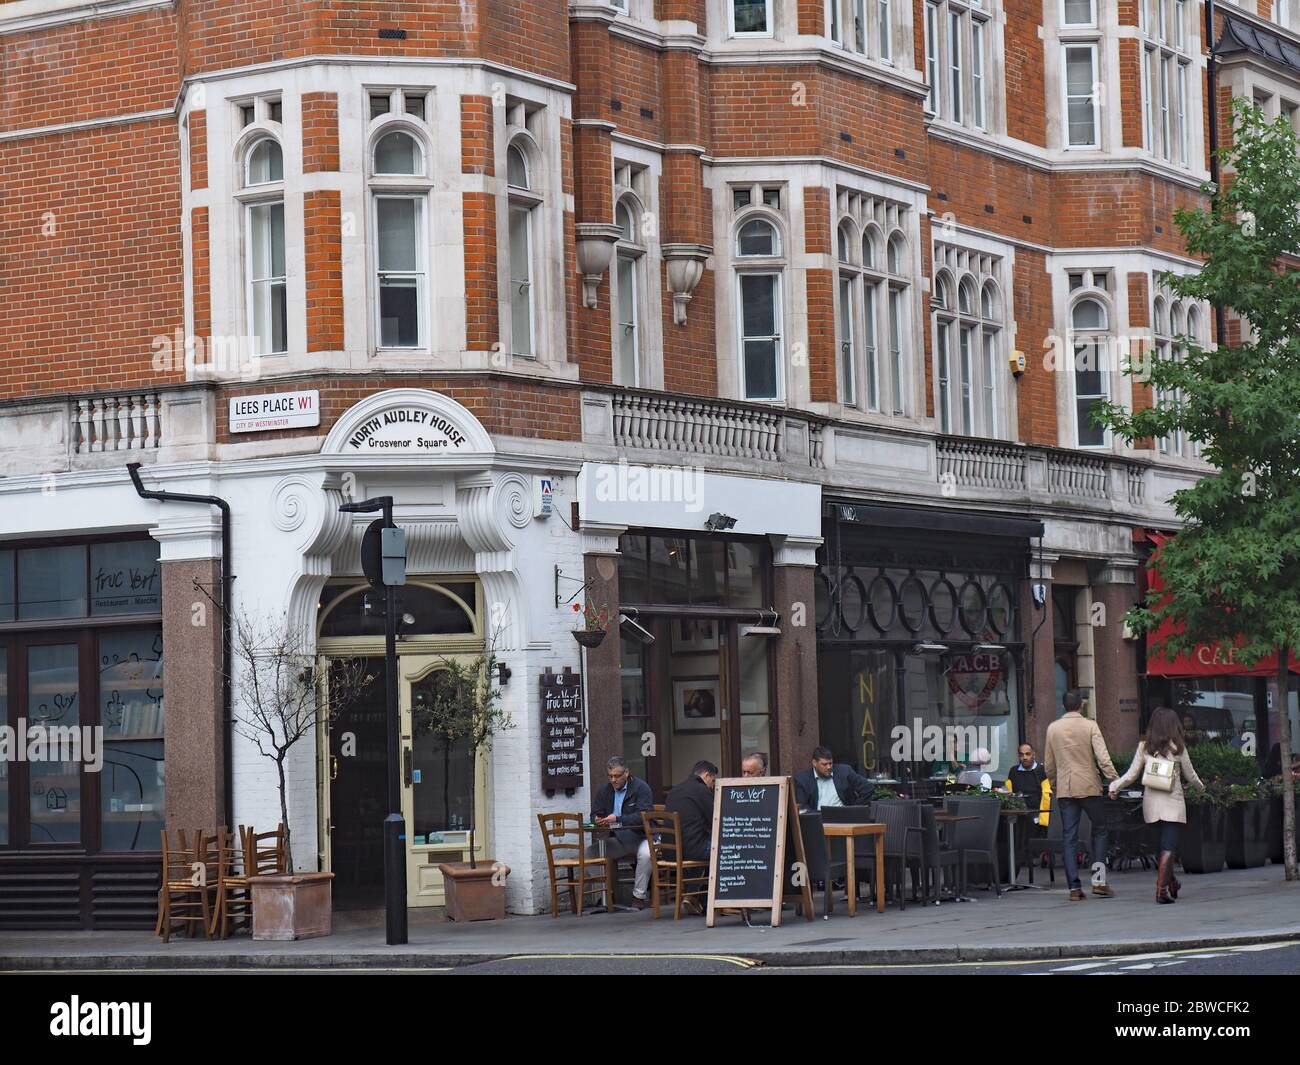 LONDRES - SEPT. 27, 2016: Un café extérieur indépendant dans un bâtiment très orné près du quartier de Mayfair. Banque D'Images